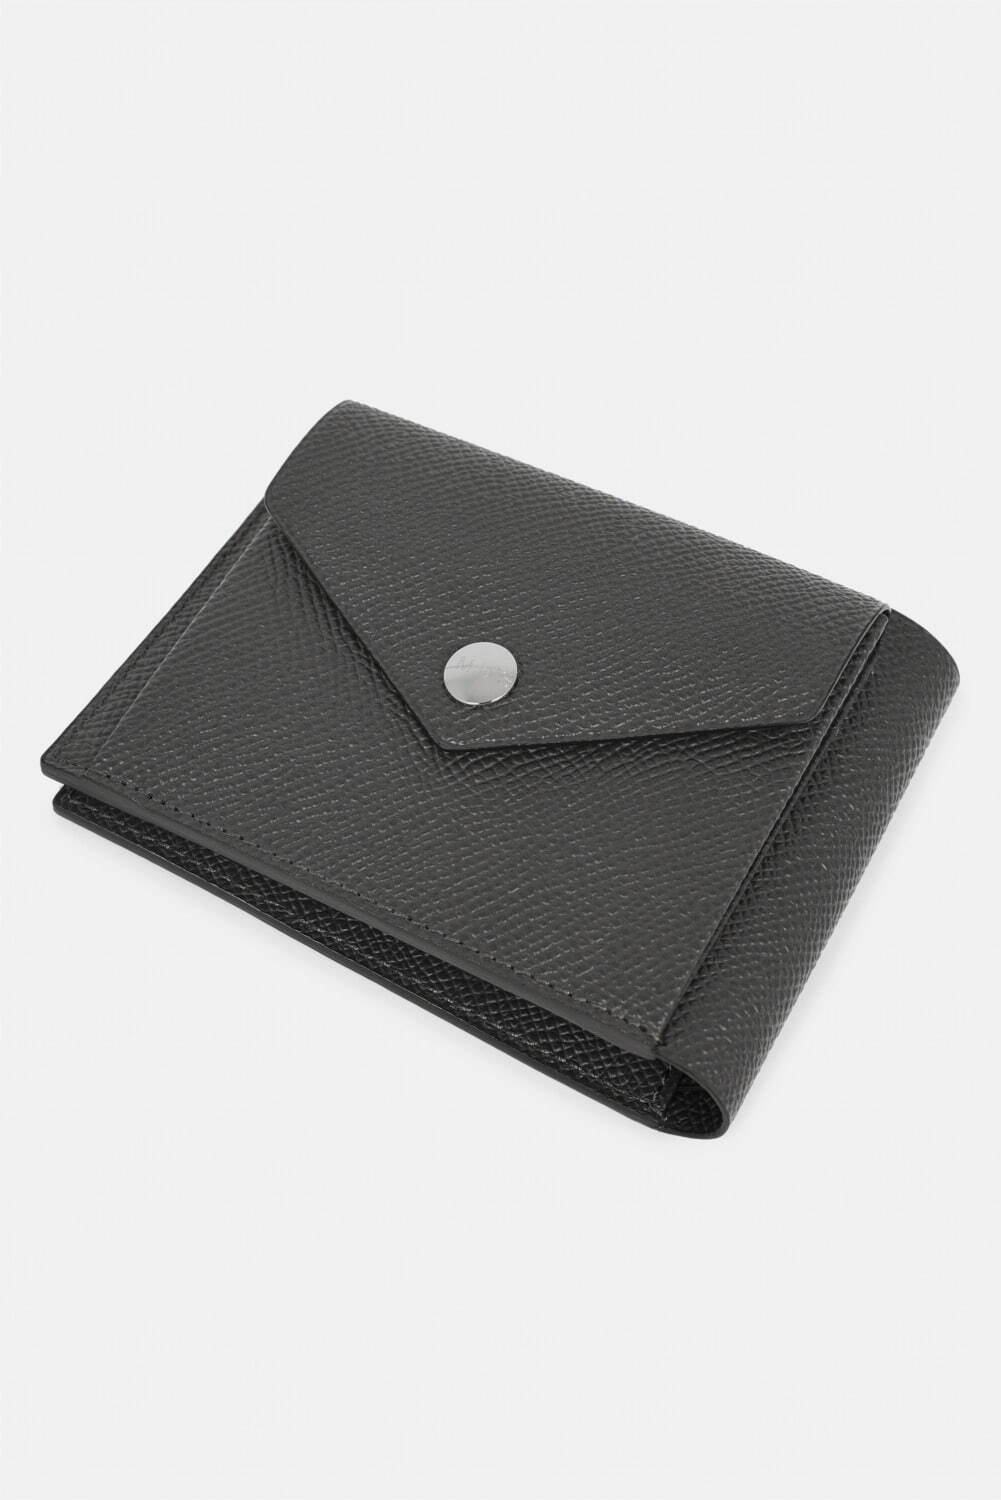 ラッド ミュージシャン初の革財布 - “1枚革”のようにしなやかなレザー